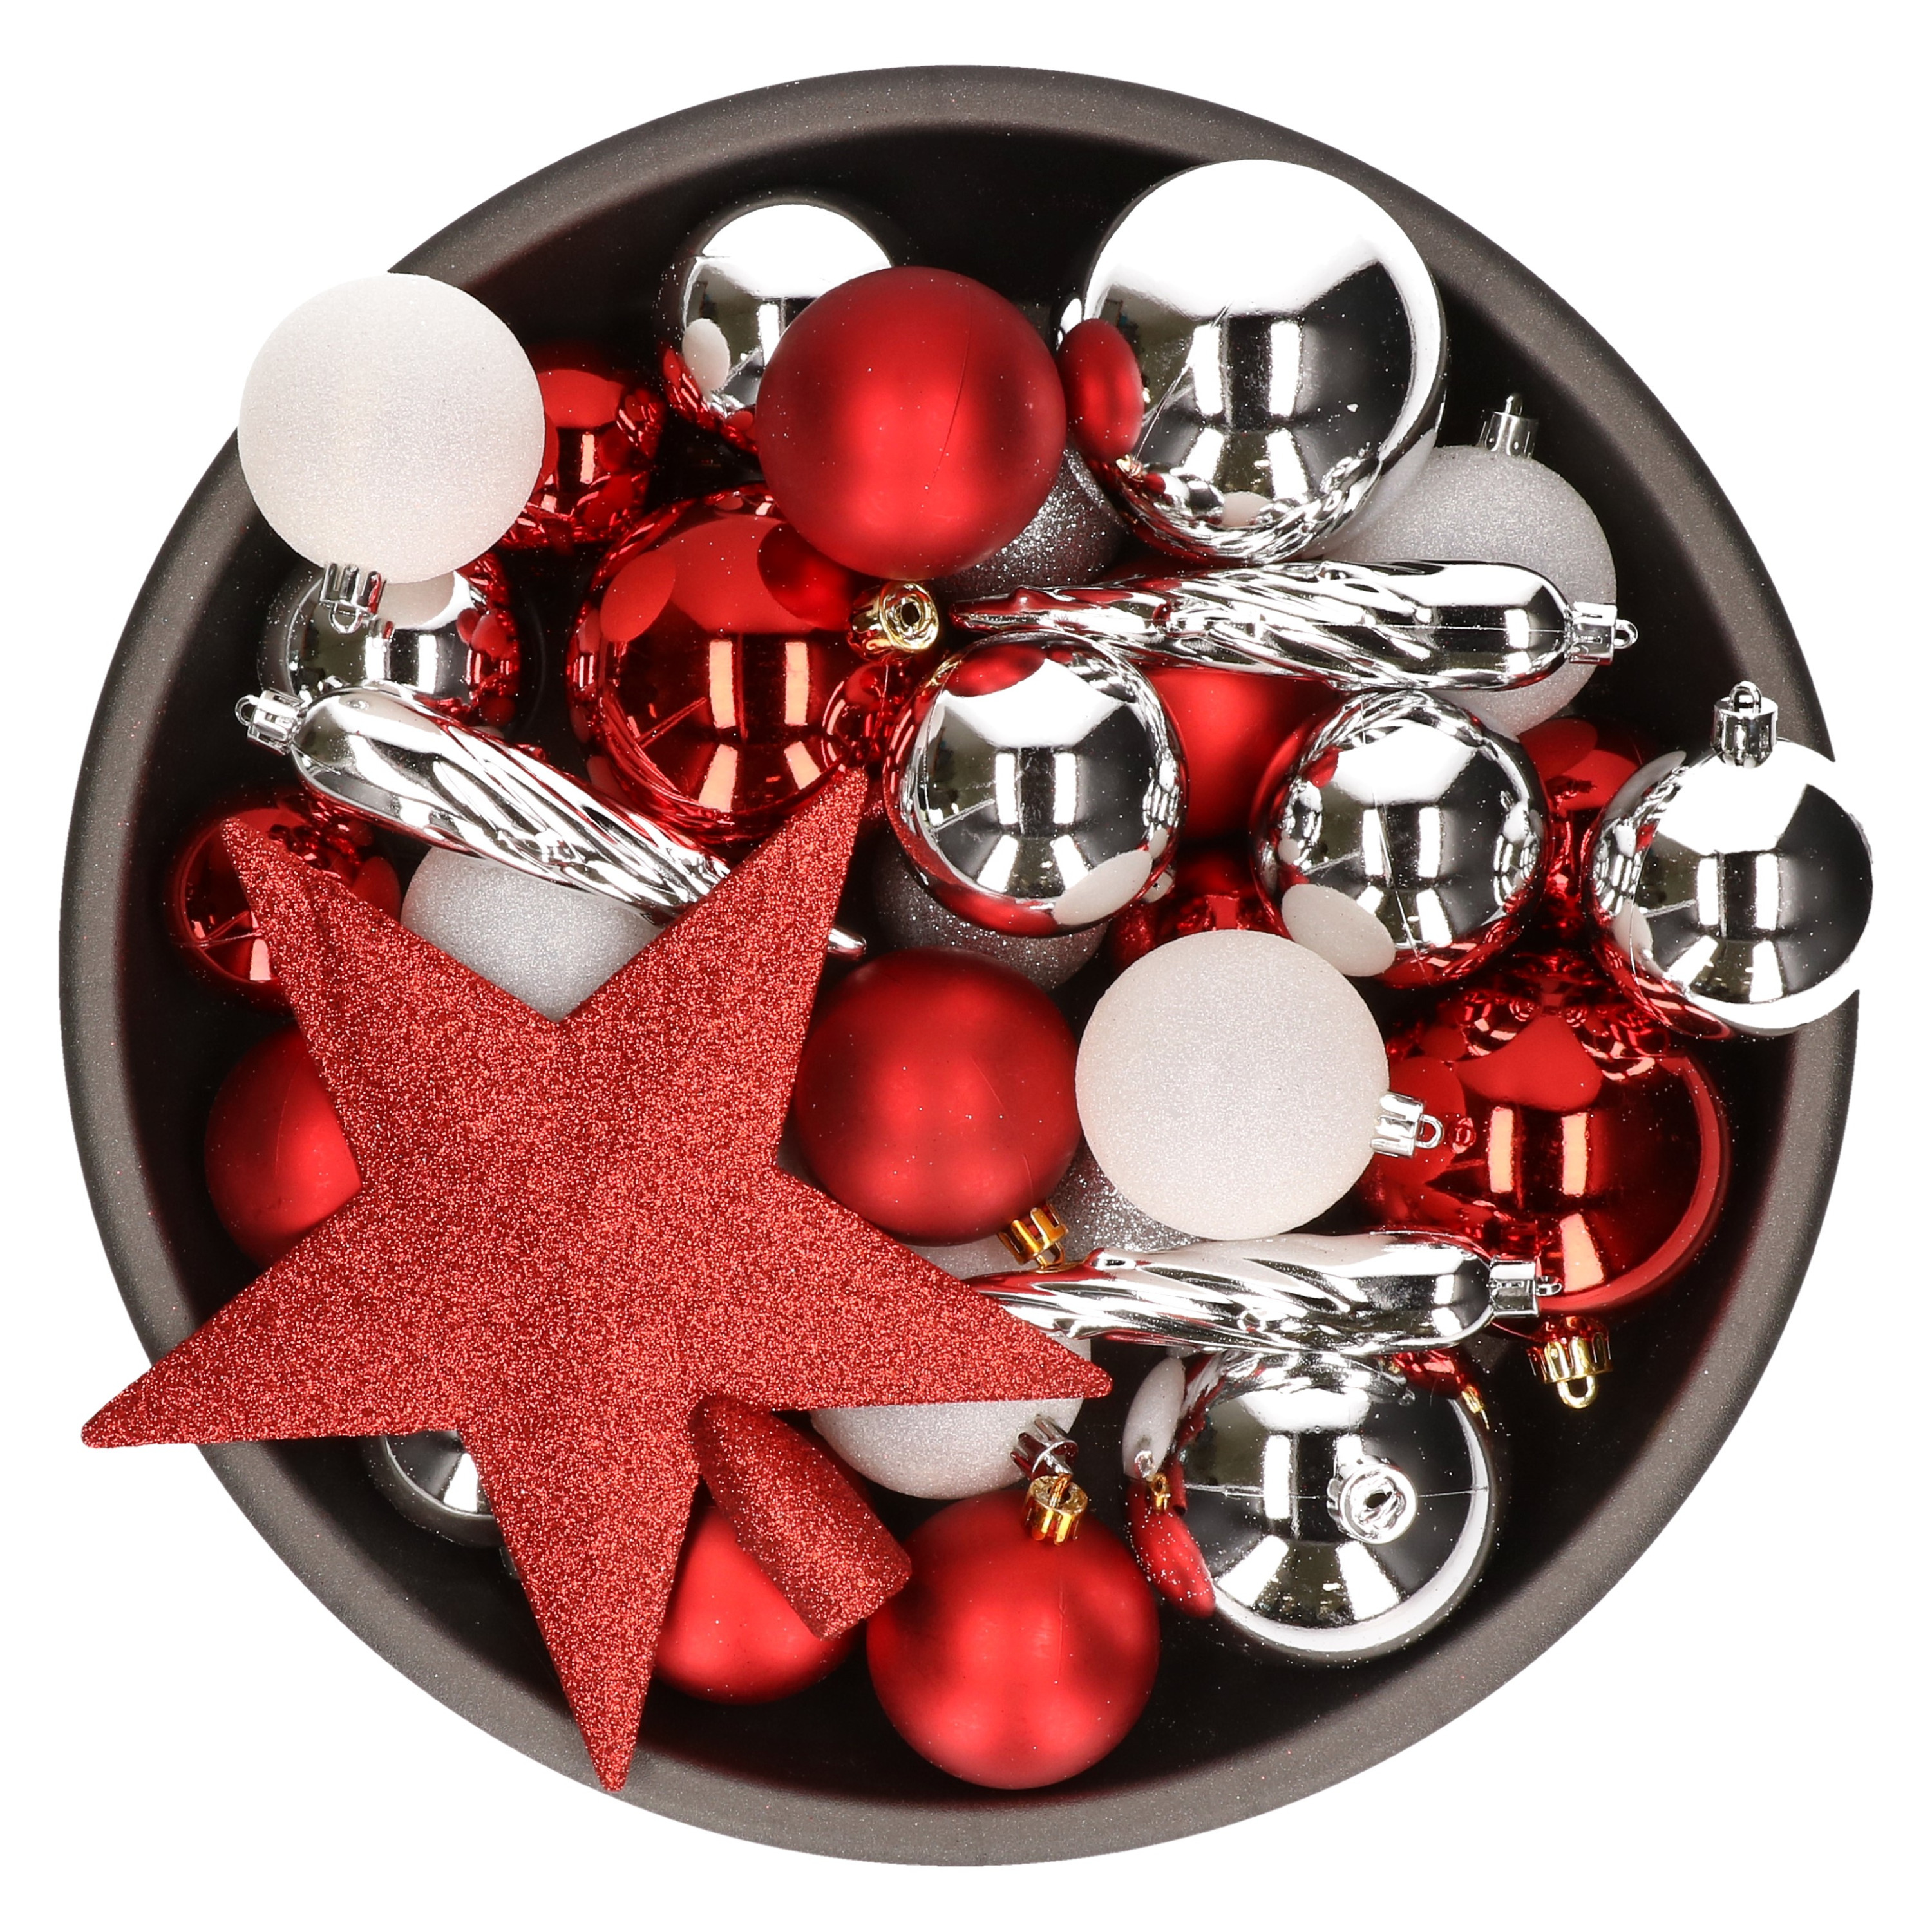 33x stuks kunststof kerstballen met piek 5-6-8 cm rood-wit-zilver incl. haakjes